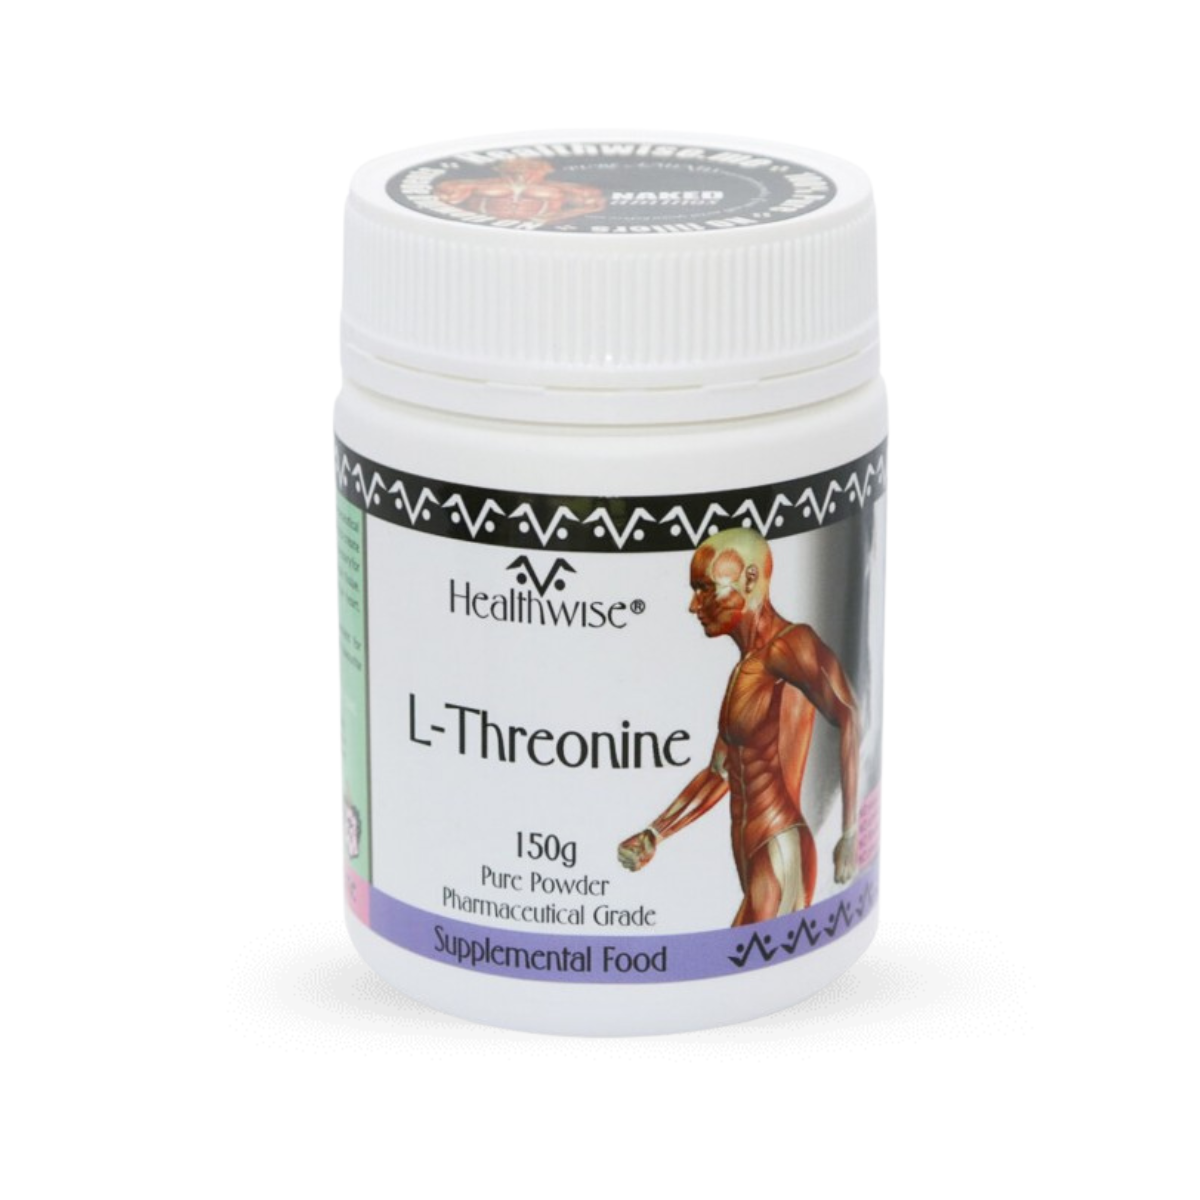 HealthWise L-Threonine Powder 150g